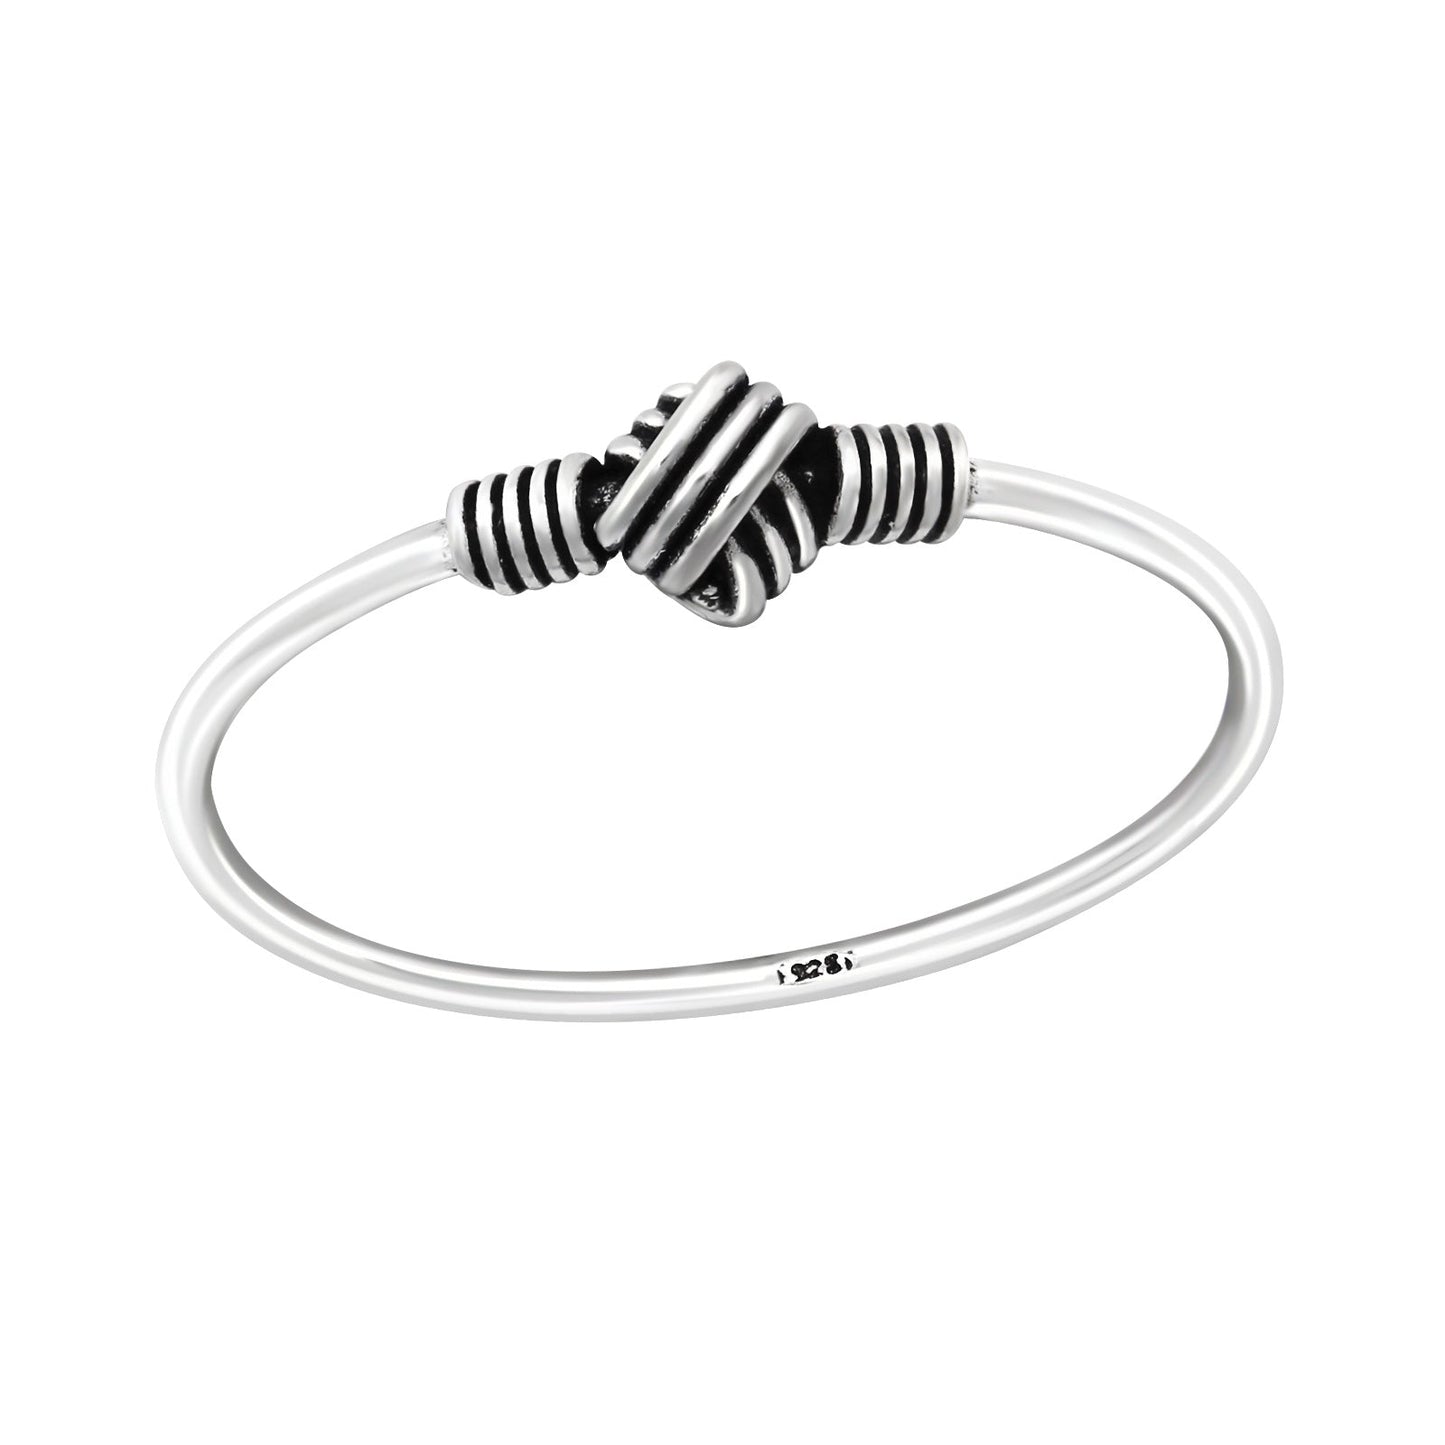 Armband Met Twee Zwarte En Witte Kralen In Zilveren Smalle Knoop Ring.